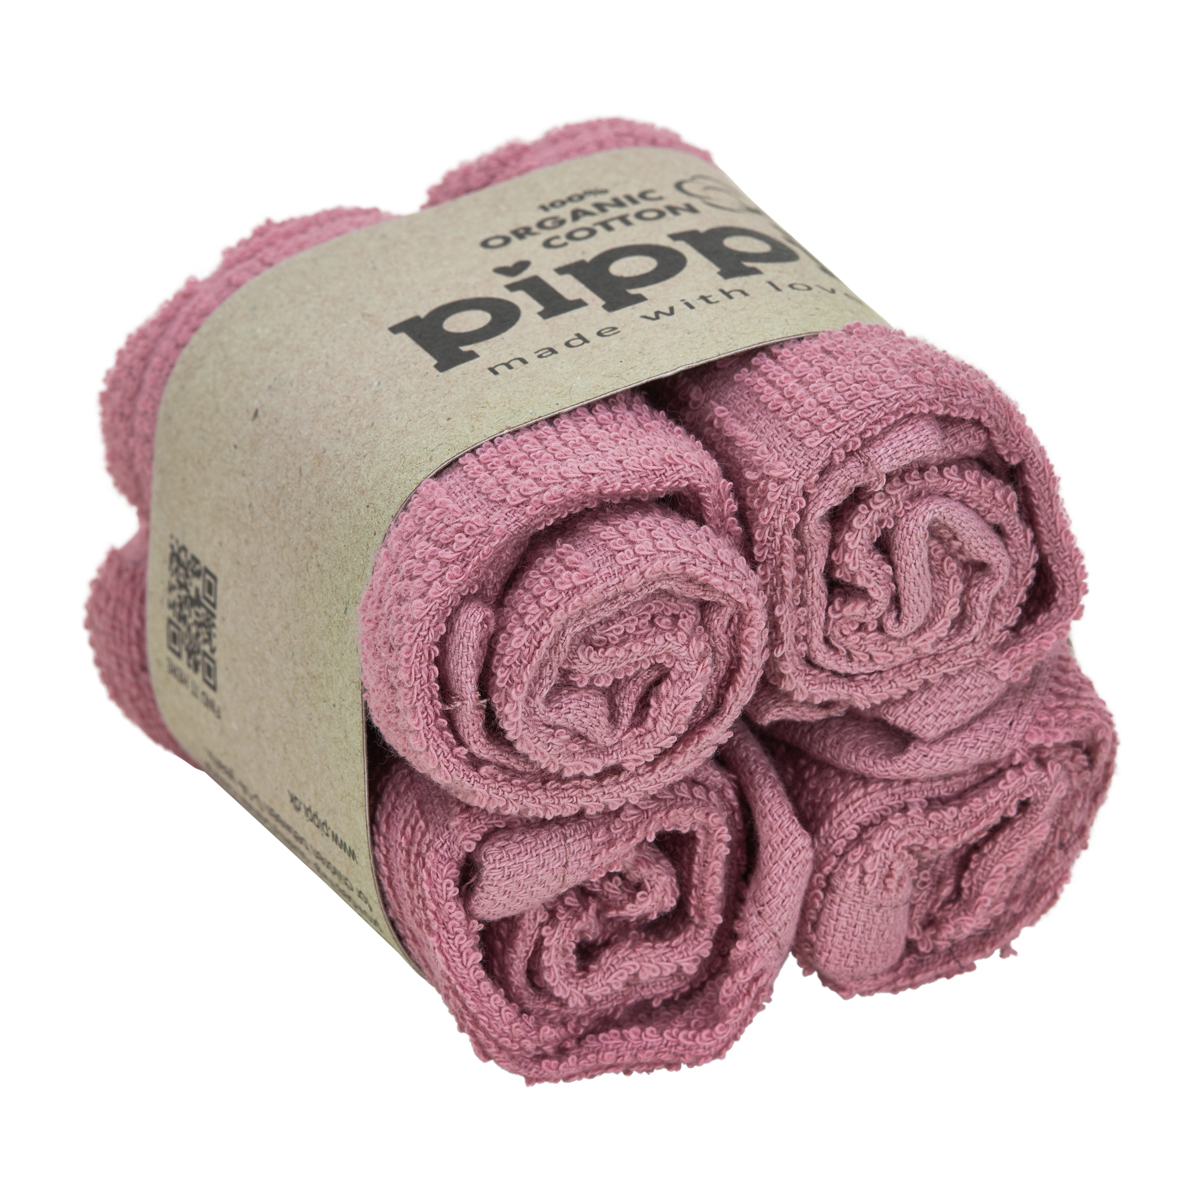 Pippi bavlněné dětské ručníky 4 kusy 4753 - 556